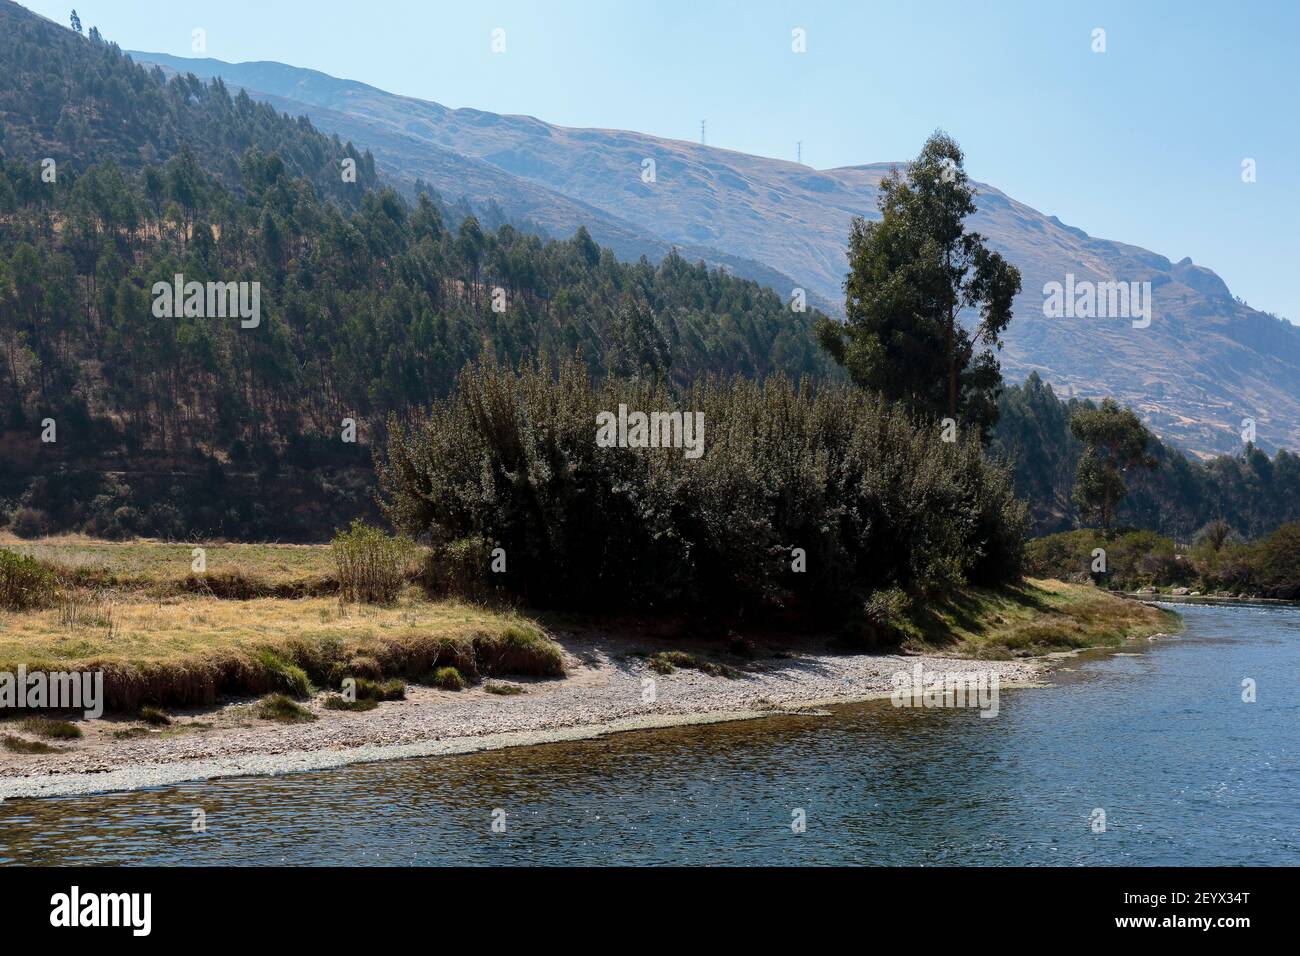 Ruhige Szene einer Andenlandschaft neben dem Fluss eingebettet in das Innere der hohen Berge. Huancayo - Peru Stockfoto